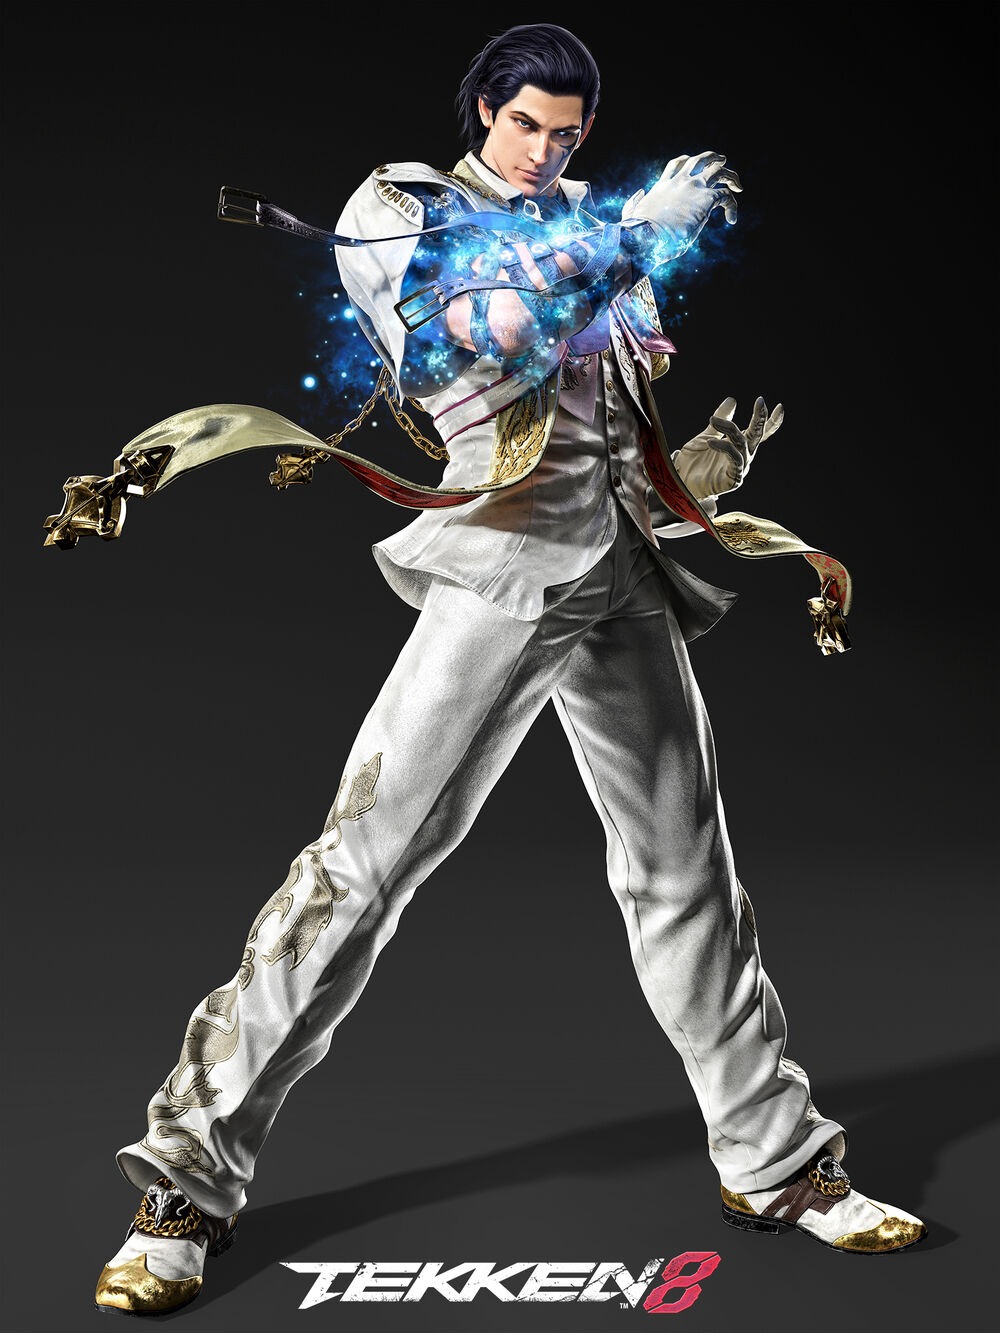 Official Character Tekken 8 Render of Claudio 